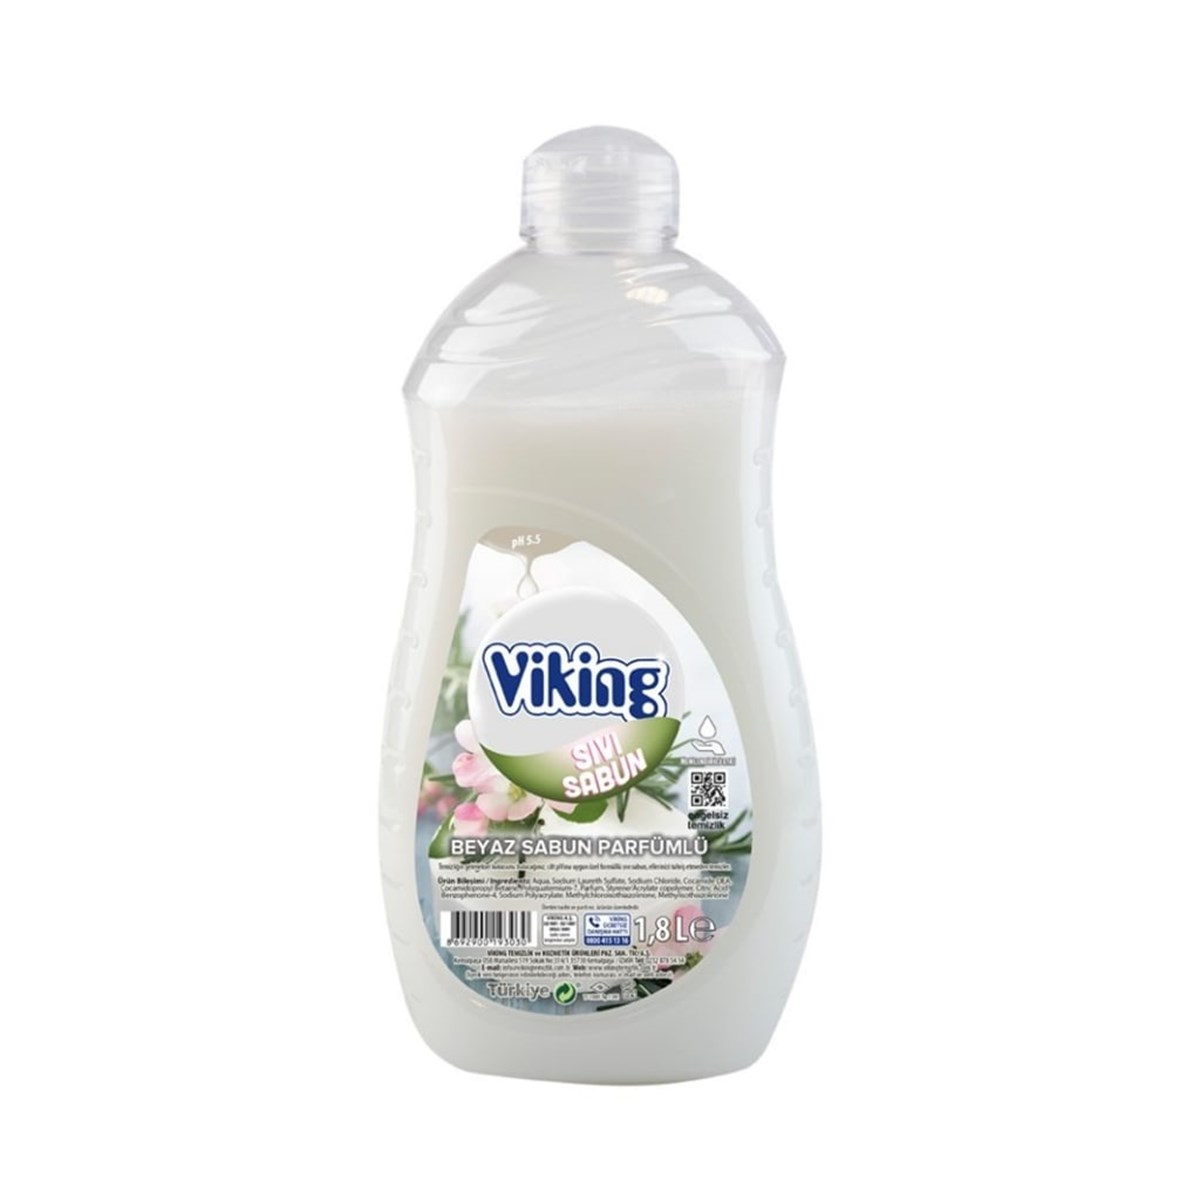 Viking Beyaz Sabun Parfümlü Sıvı Sabun (1800 ml)